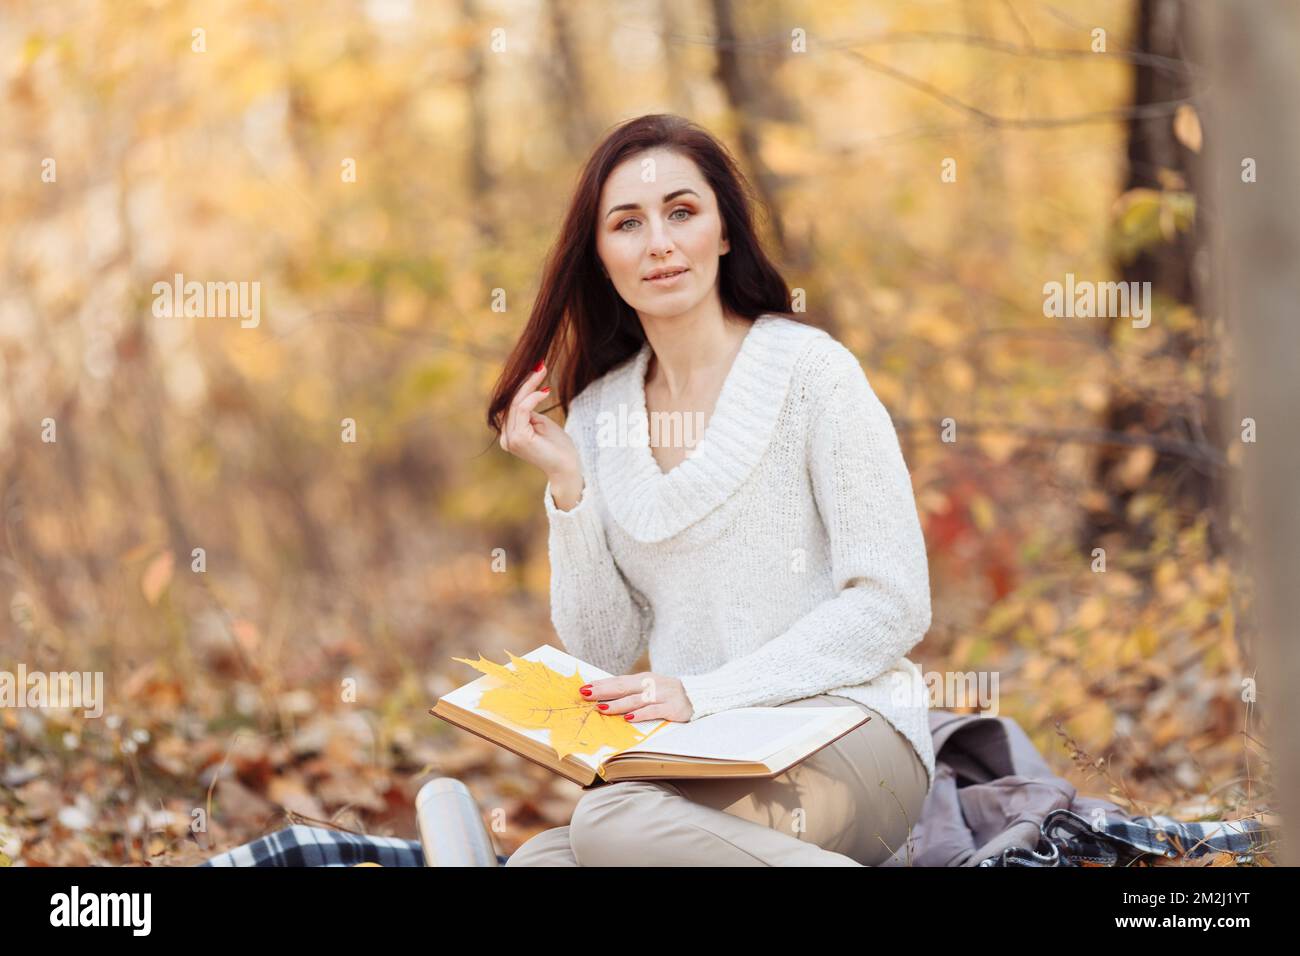 Vue latérale de la femme brune heureuse en lunettes de vue assise sur le banc et livre de lecture dans le parc. Photo de haute qualité Banque D'Images